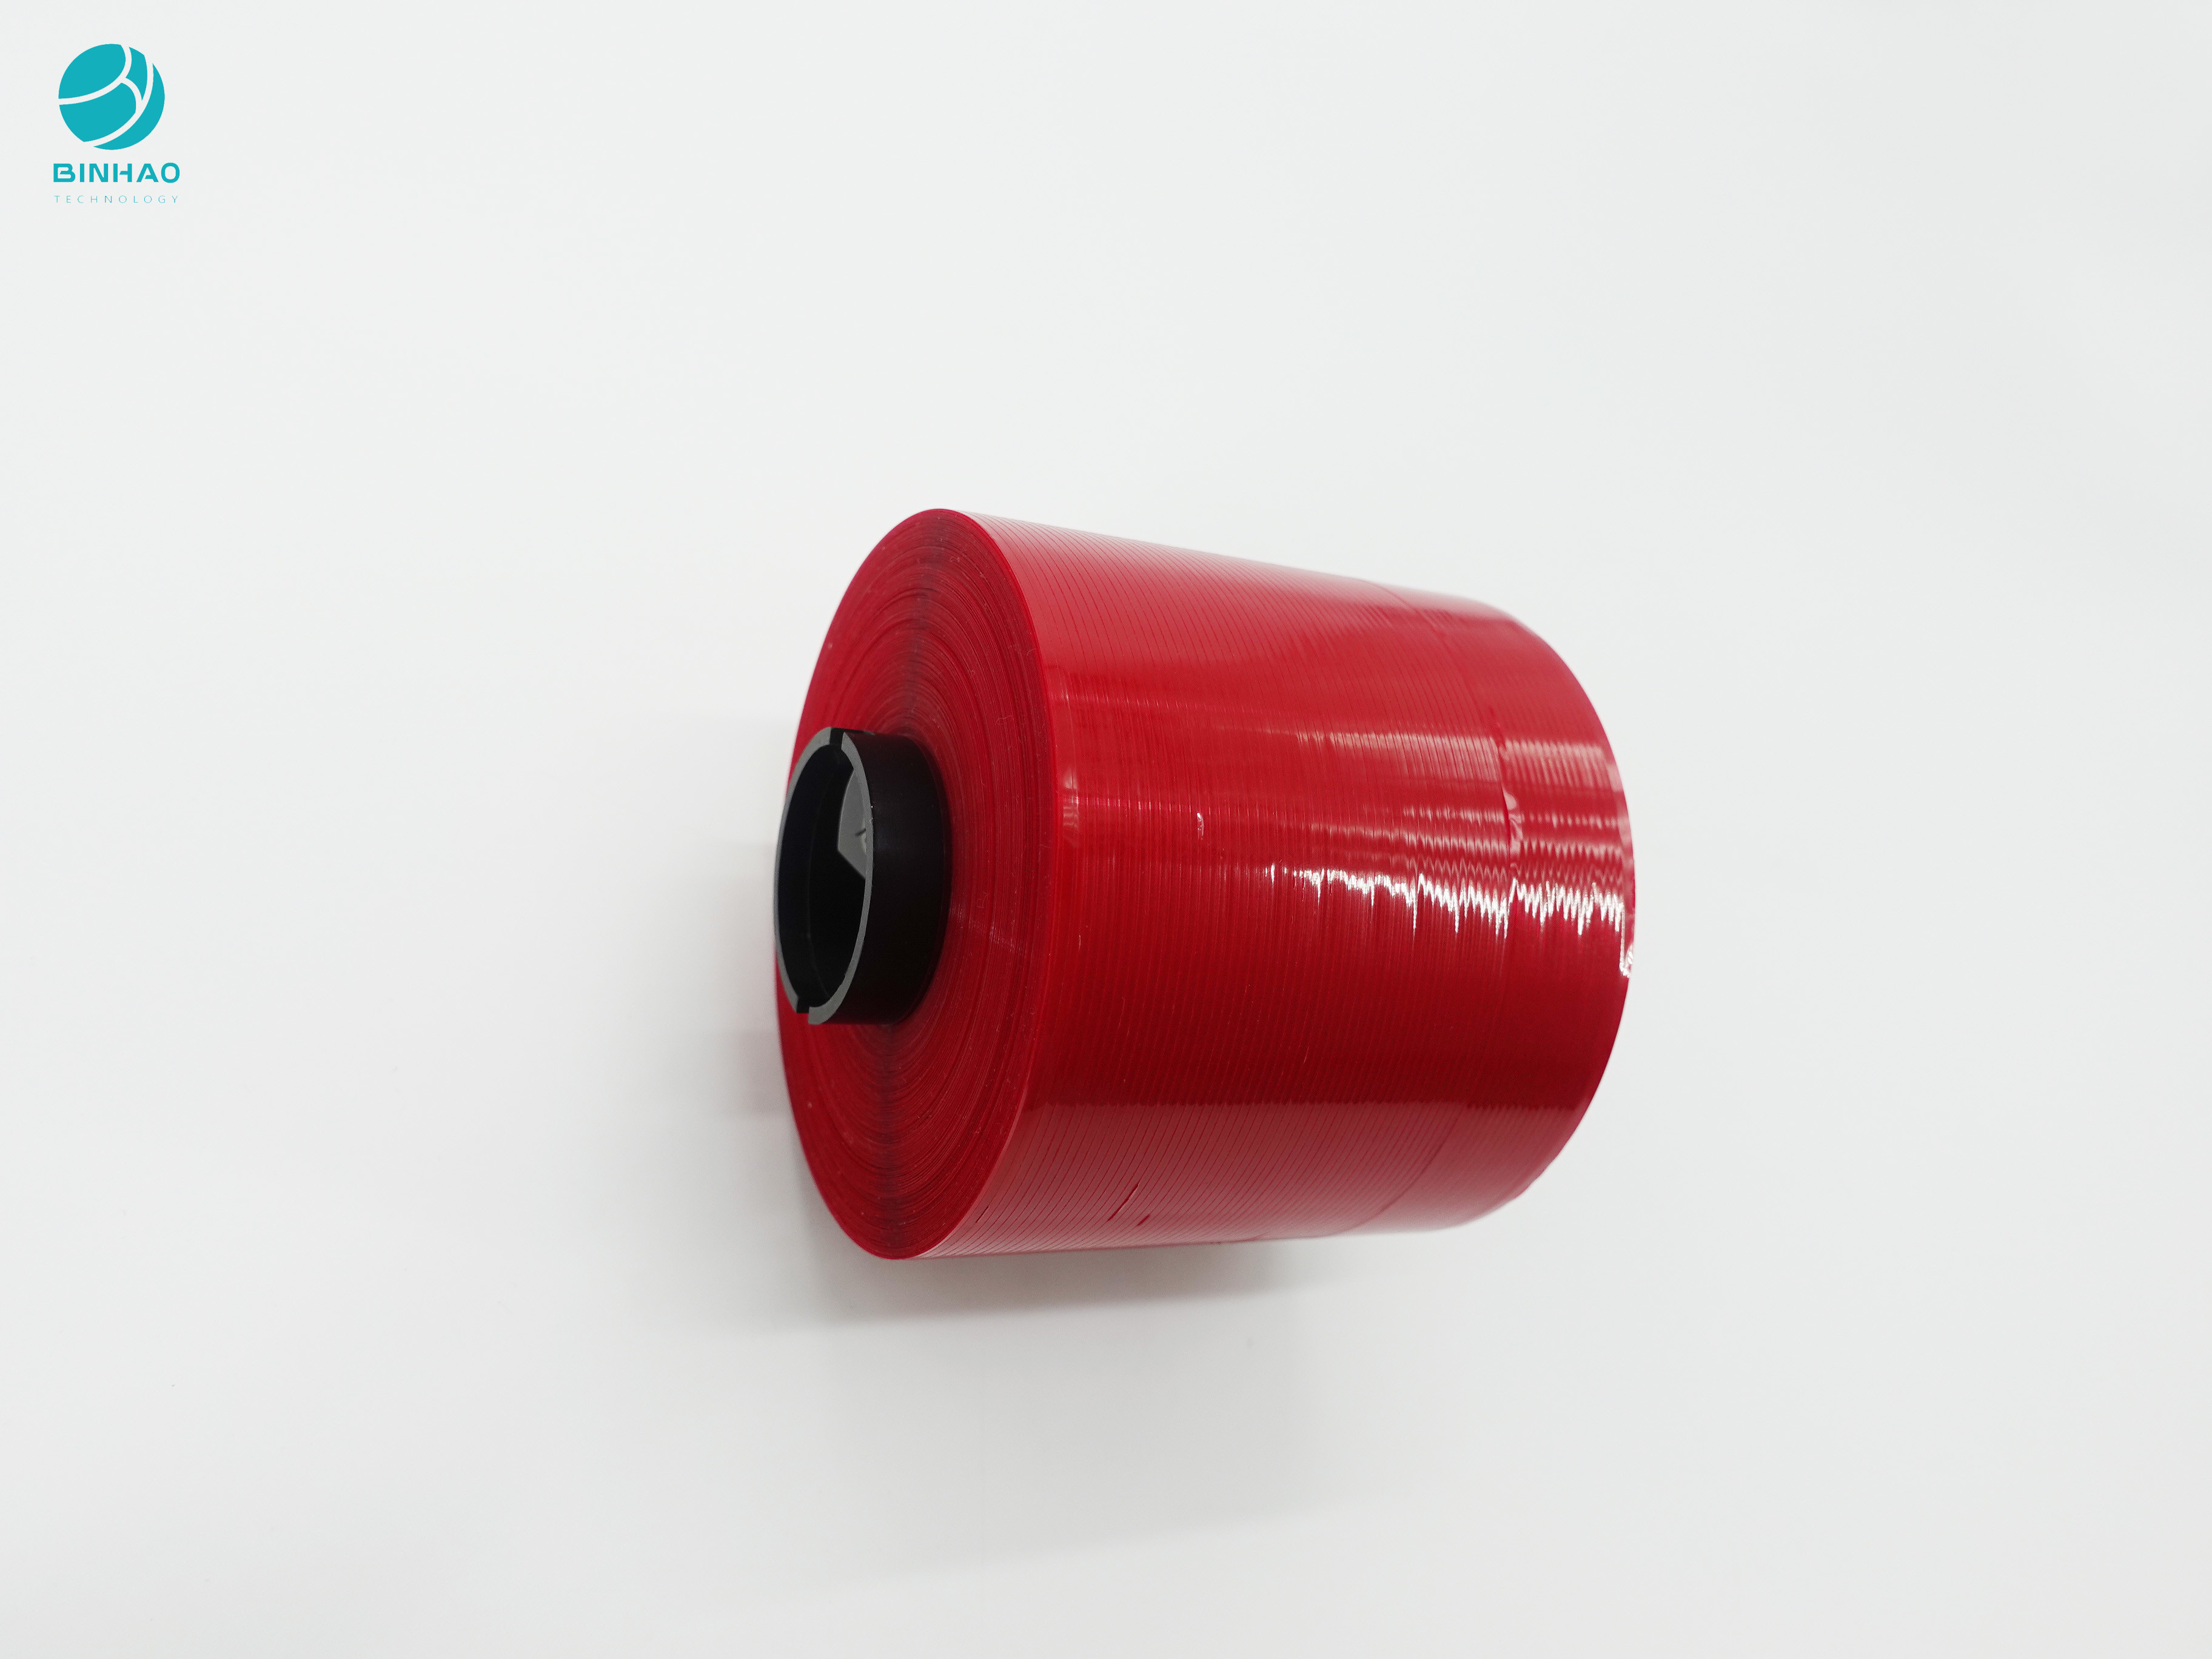 4mm profundos - fita adesiva da tira de rasgo da boa decoração vermelha para o pacote dos produtos da caixa